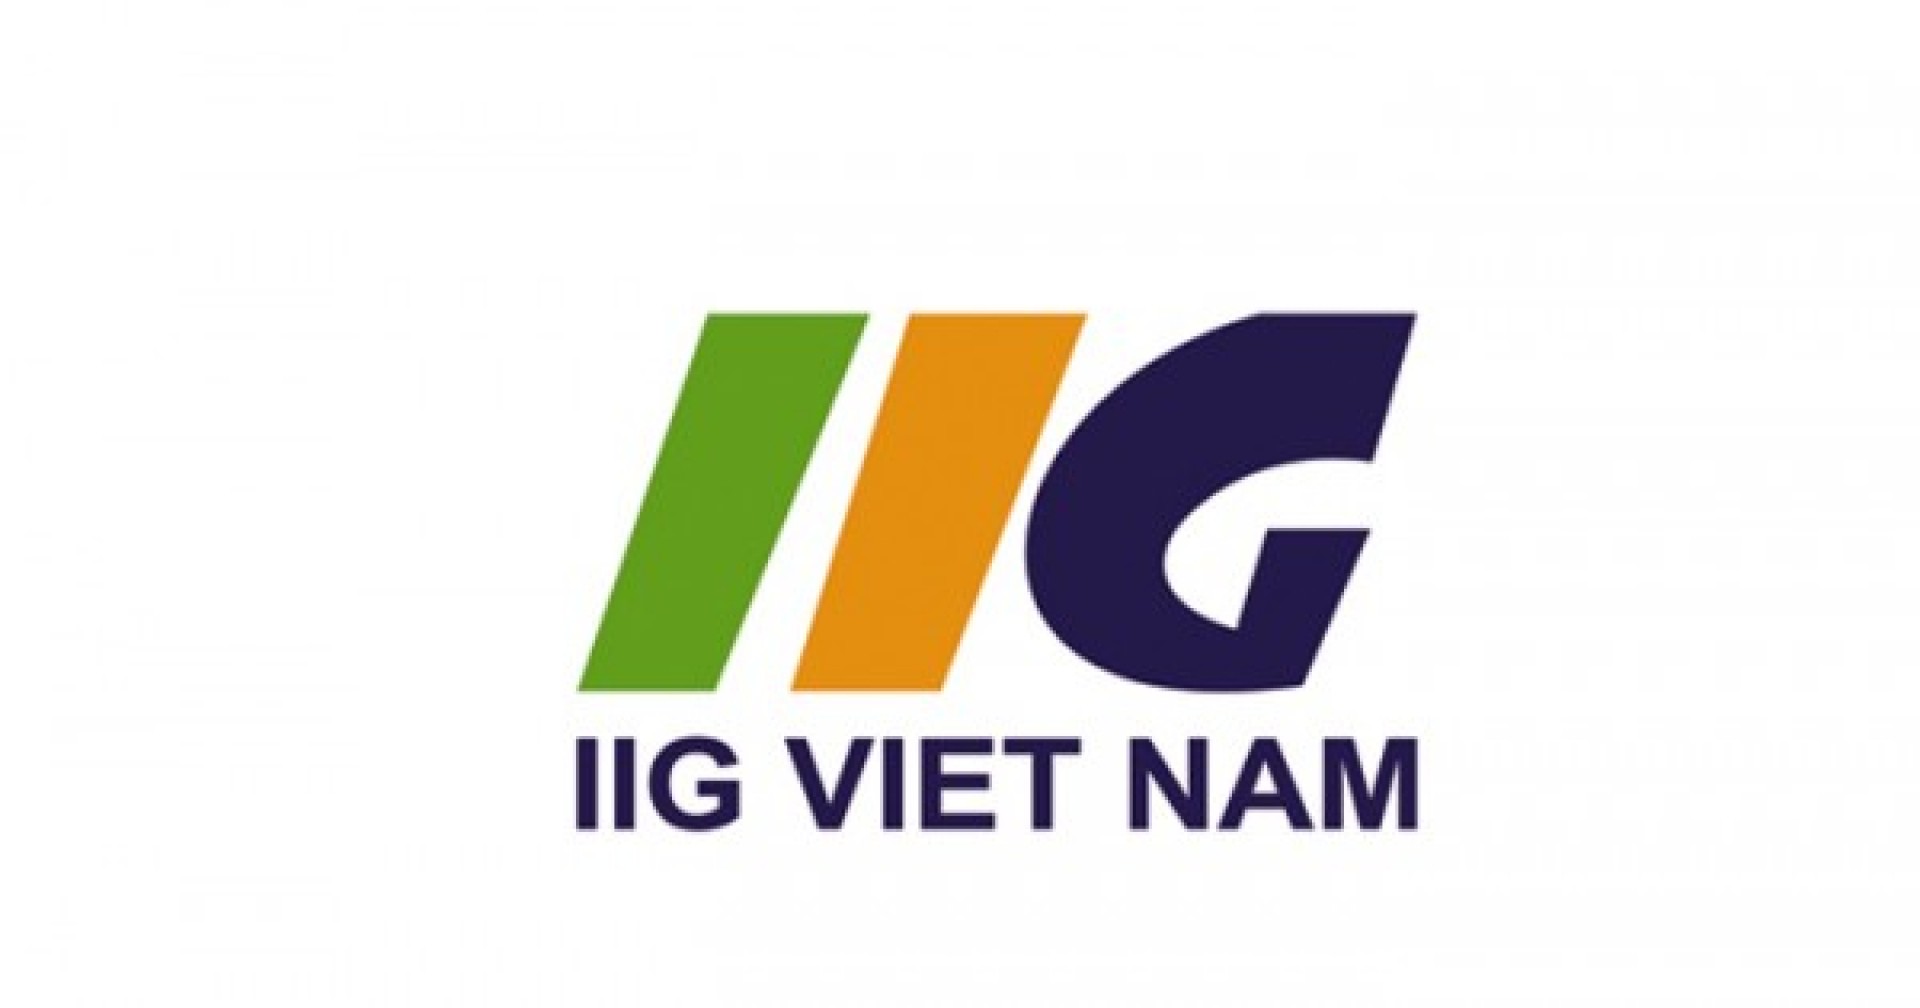 [HCM] IIG Vietnam tuyển dụng 300 cộng tác viên 2017